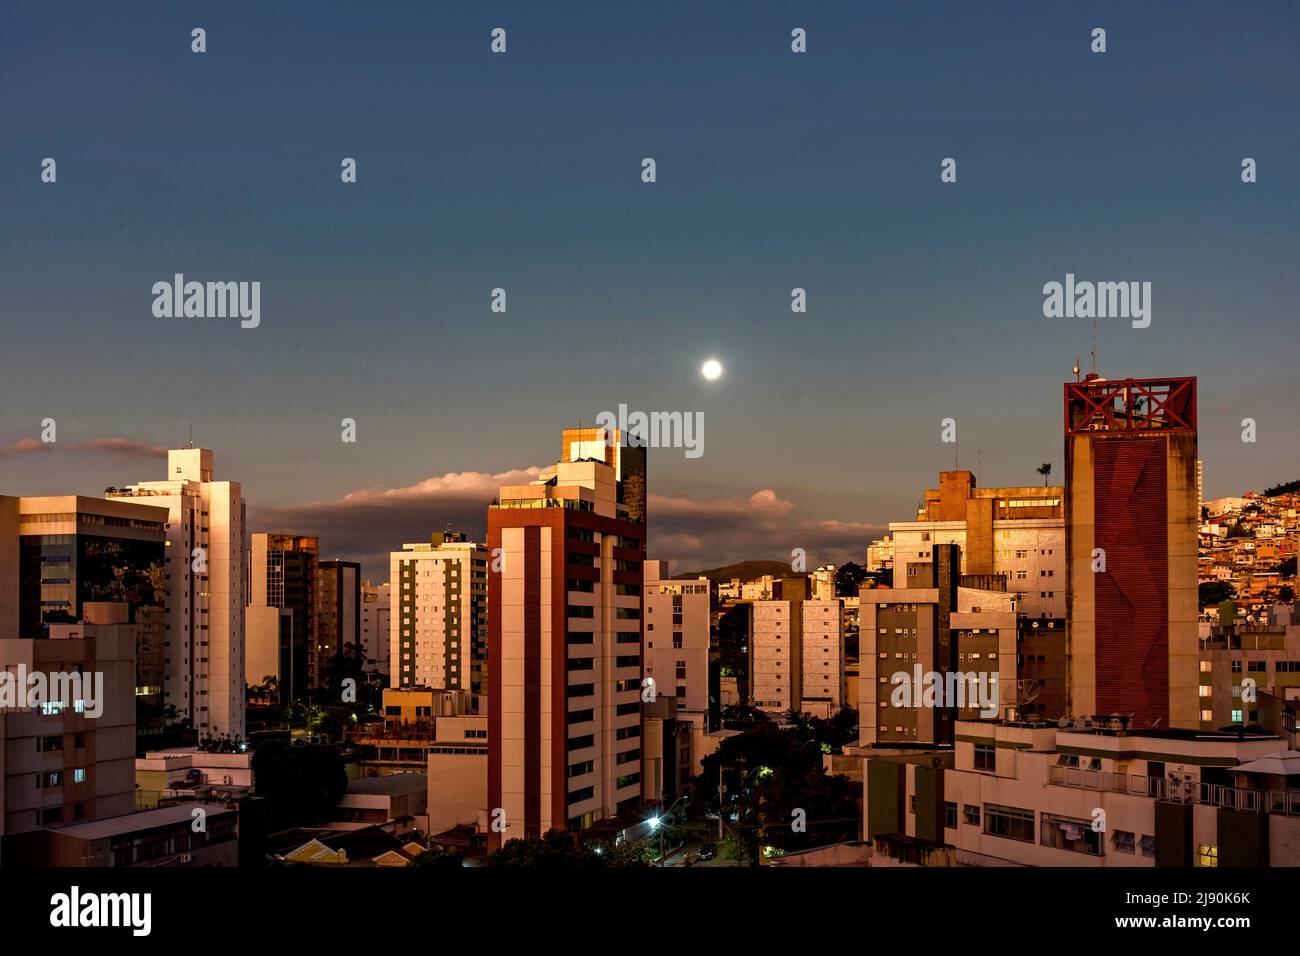 Città di Belo Horizonte, nella regione sud-orientale del Brasile, vista al crepuscolo con la luna piena sopra gli edifici, Foto Stock